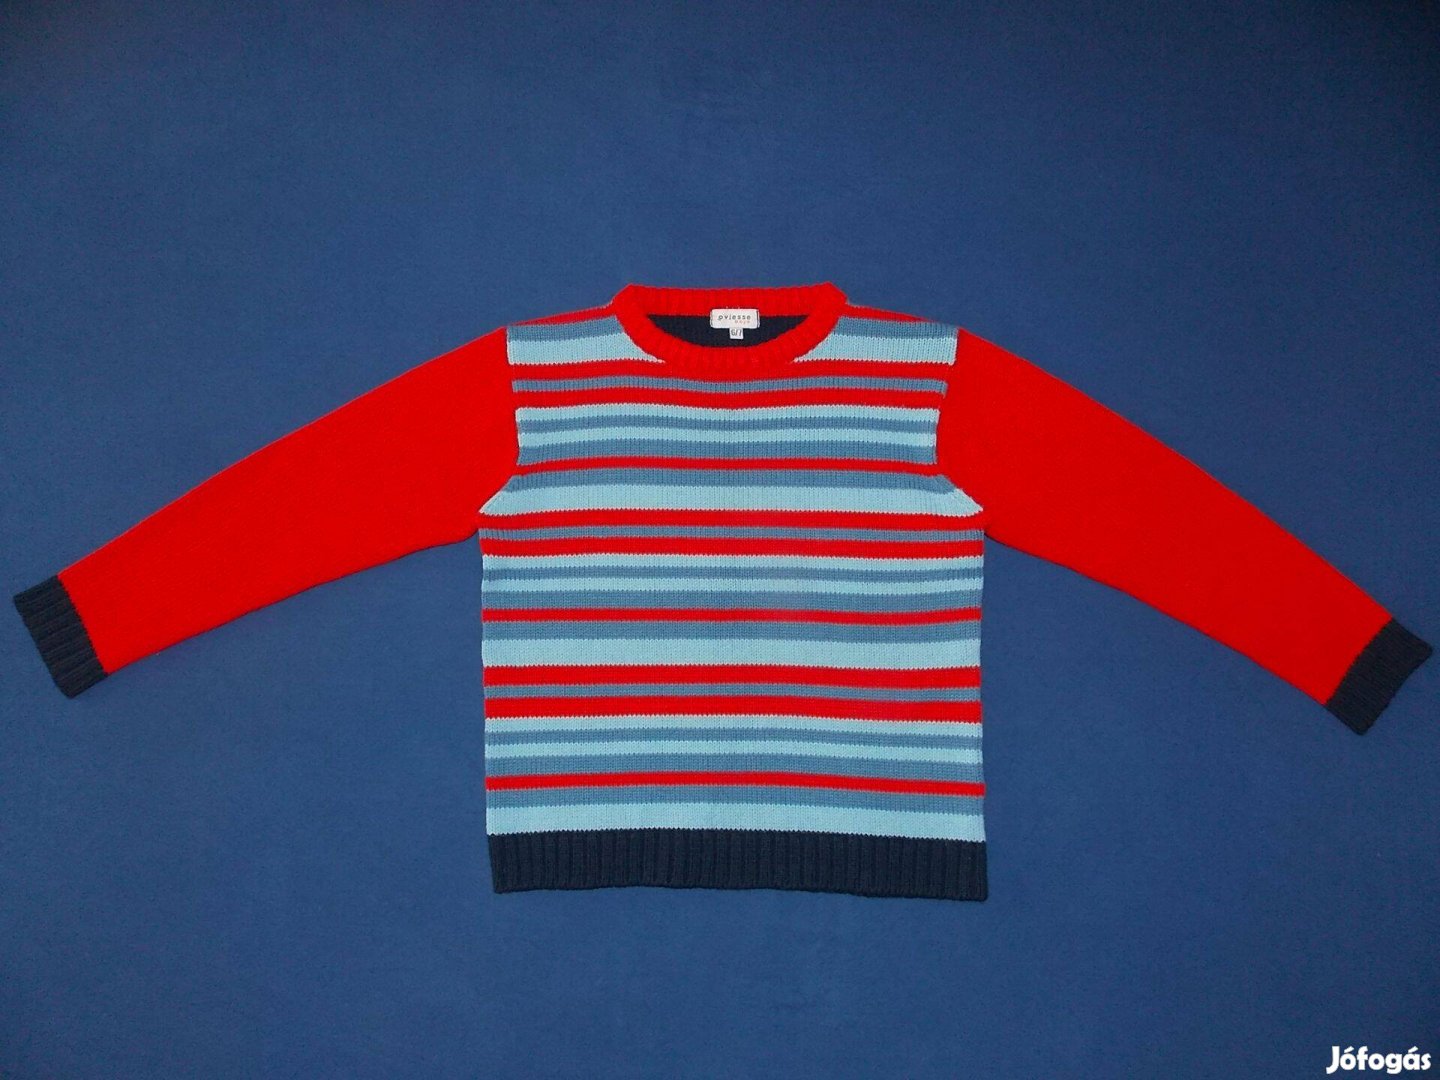 Ingyen Posta, Kék-piros csíkos, kötött pulóver 116-122-os, 6-7 évesre